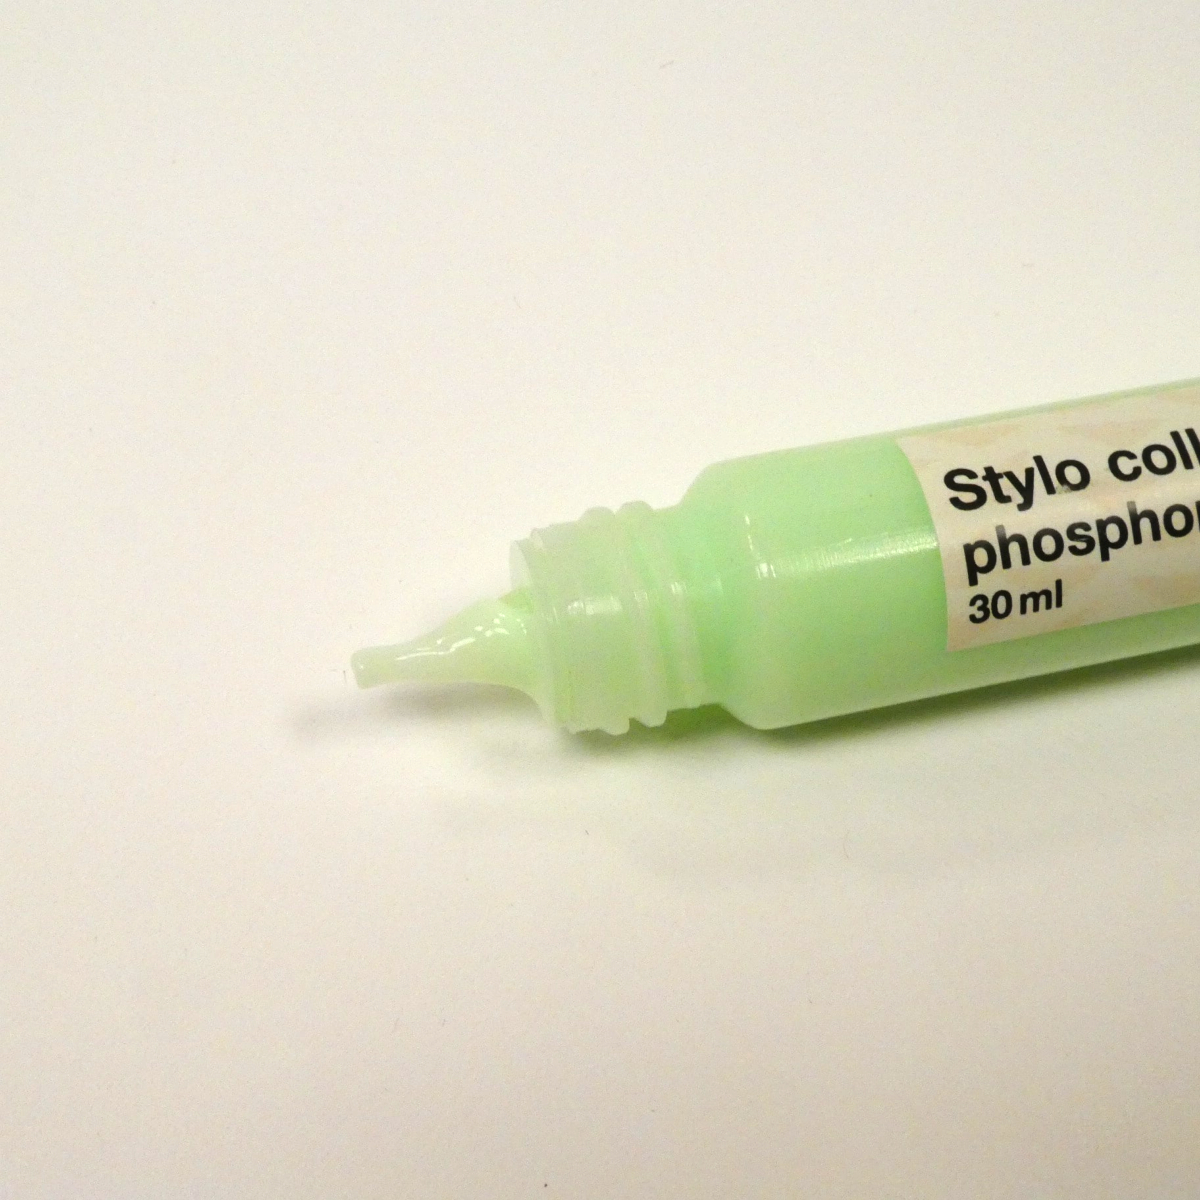 stylo-colle-phosphorescent-2-zoom